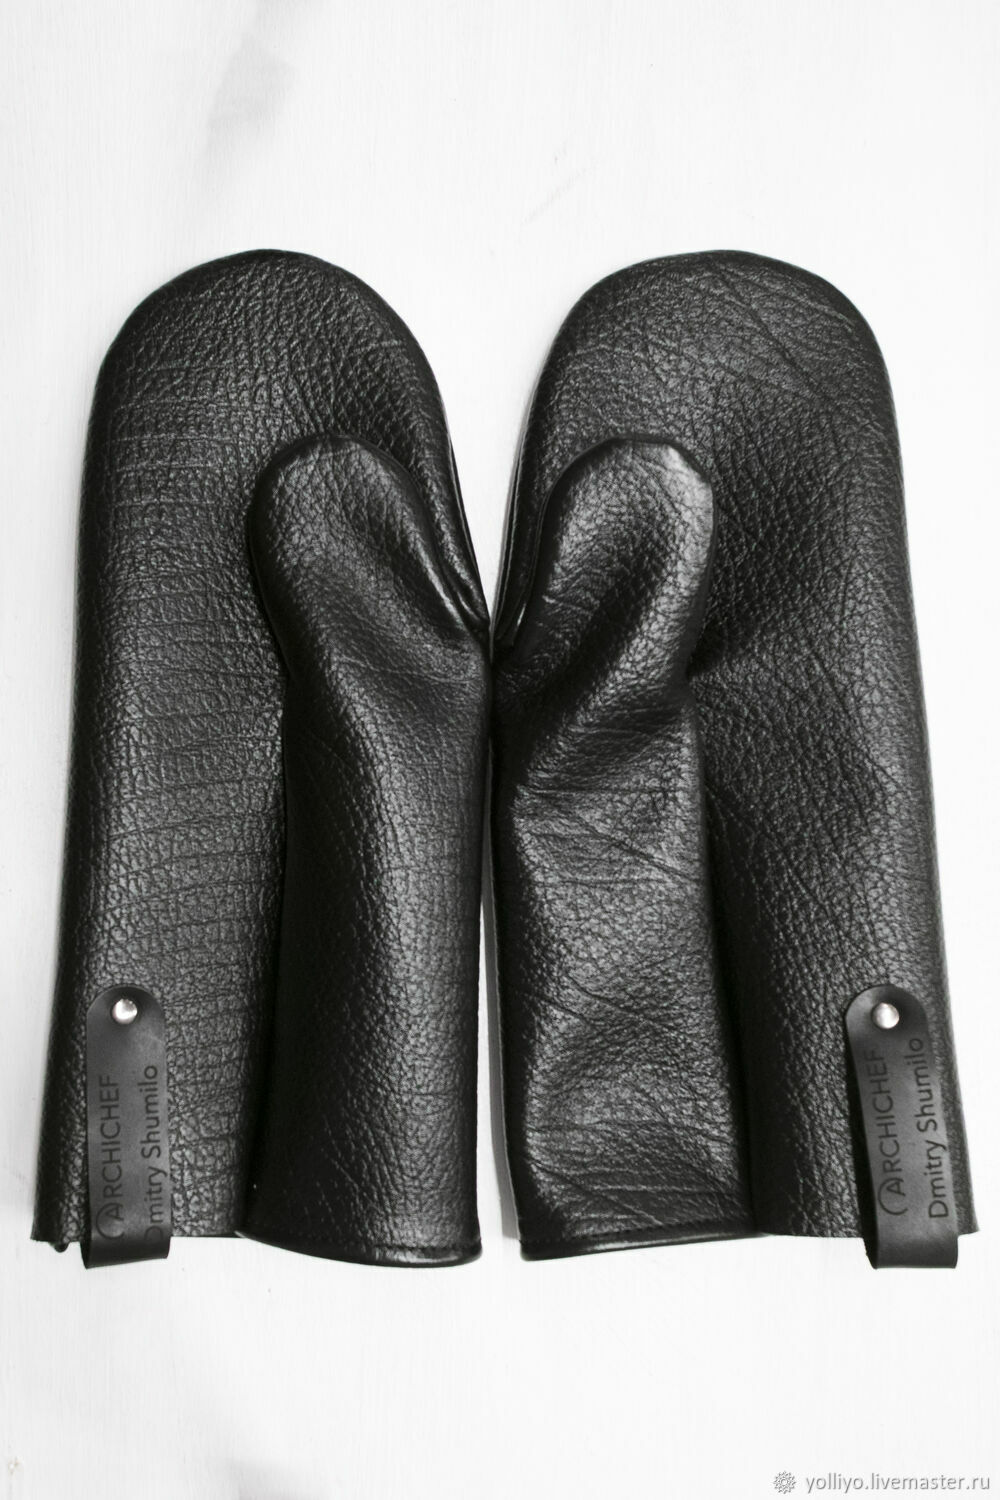  для горячего из натуральной кожи: комплект из двух рукавиц в .